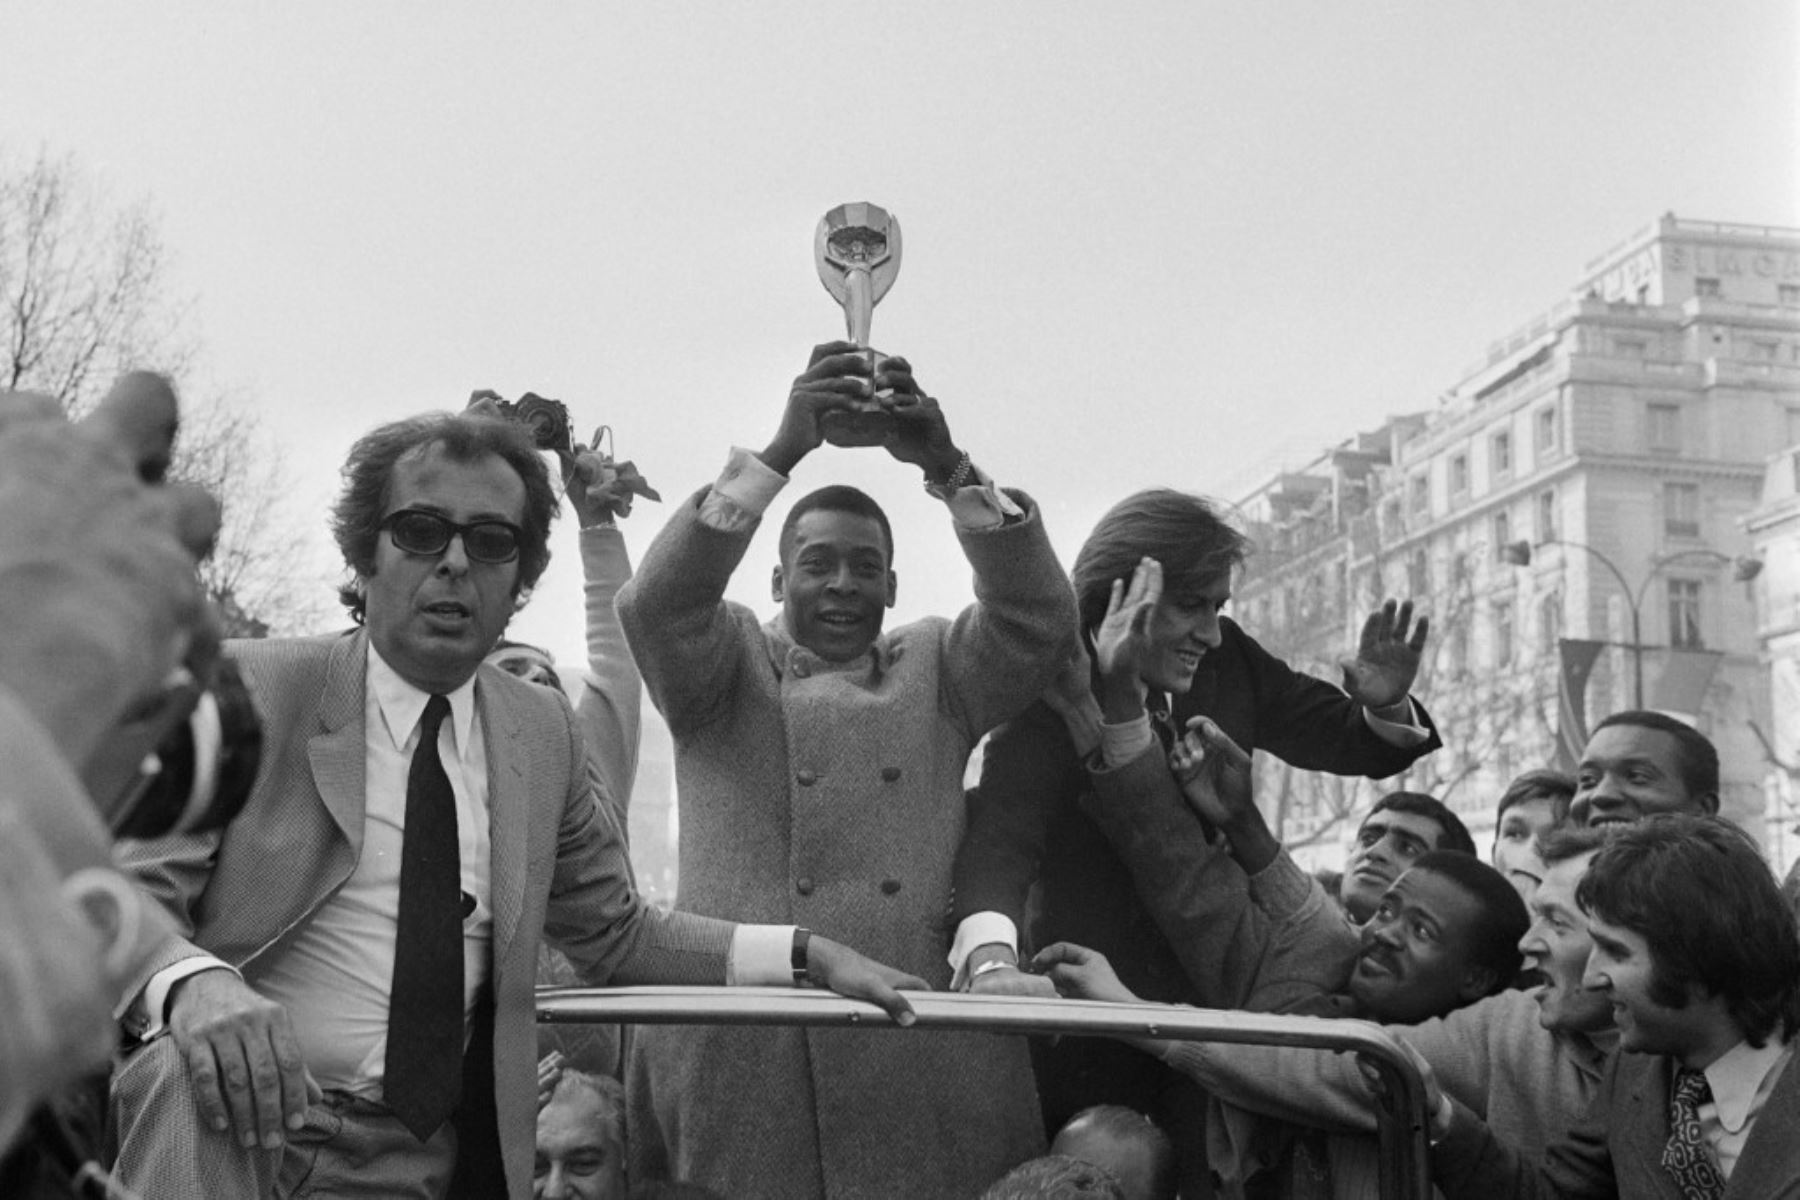 La estrella del fútbol brasileño, Edson Arantes do Nascimento, conocido como Pelé, Blande el trofeo de la Copa del Mundo el 30 de marzo de 1971 mientras camina por la avenida de los Campos Elíseos en París. Foto: AFP